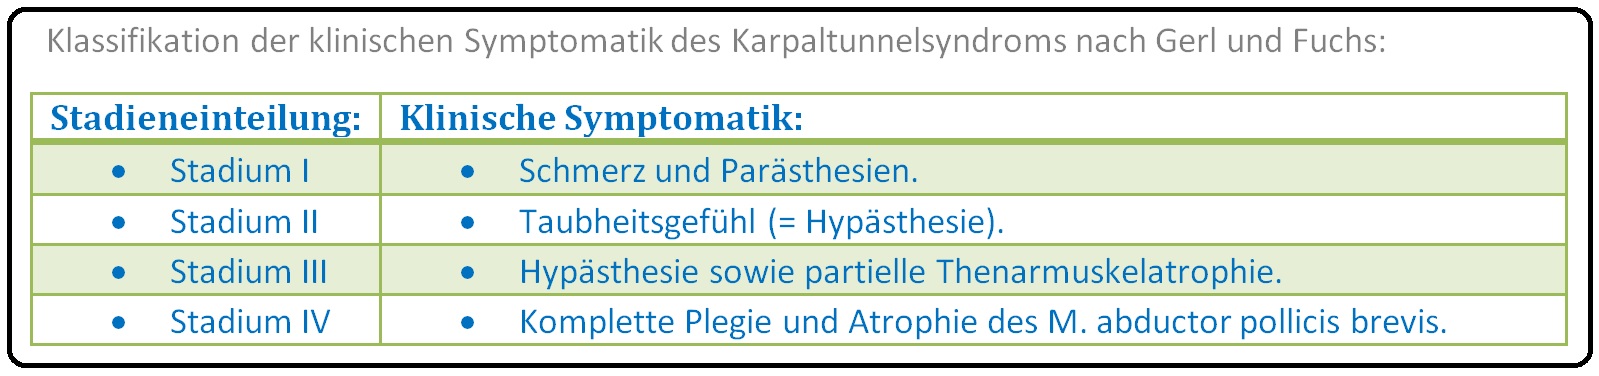 672 Klassifikation der klinischen Symptomatik des Karpaltunnelssyndroms nach Gerl und Fuchs